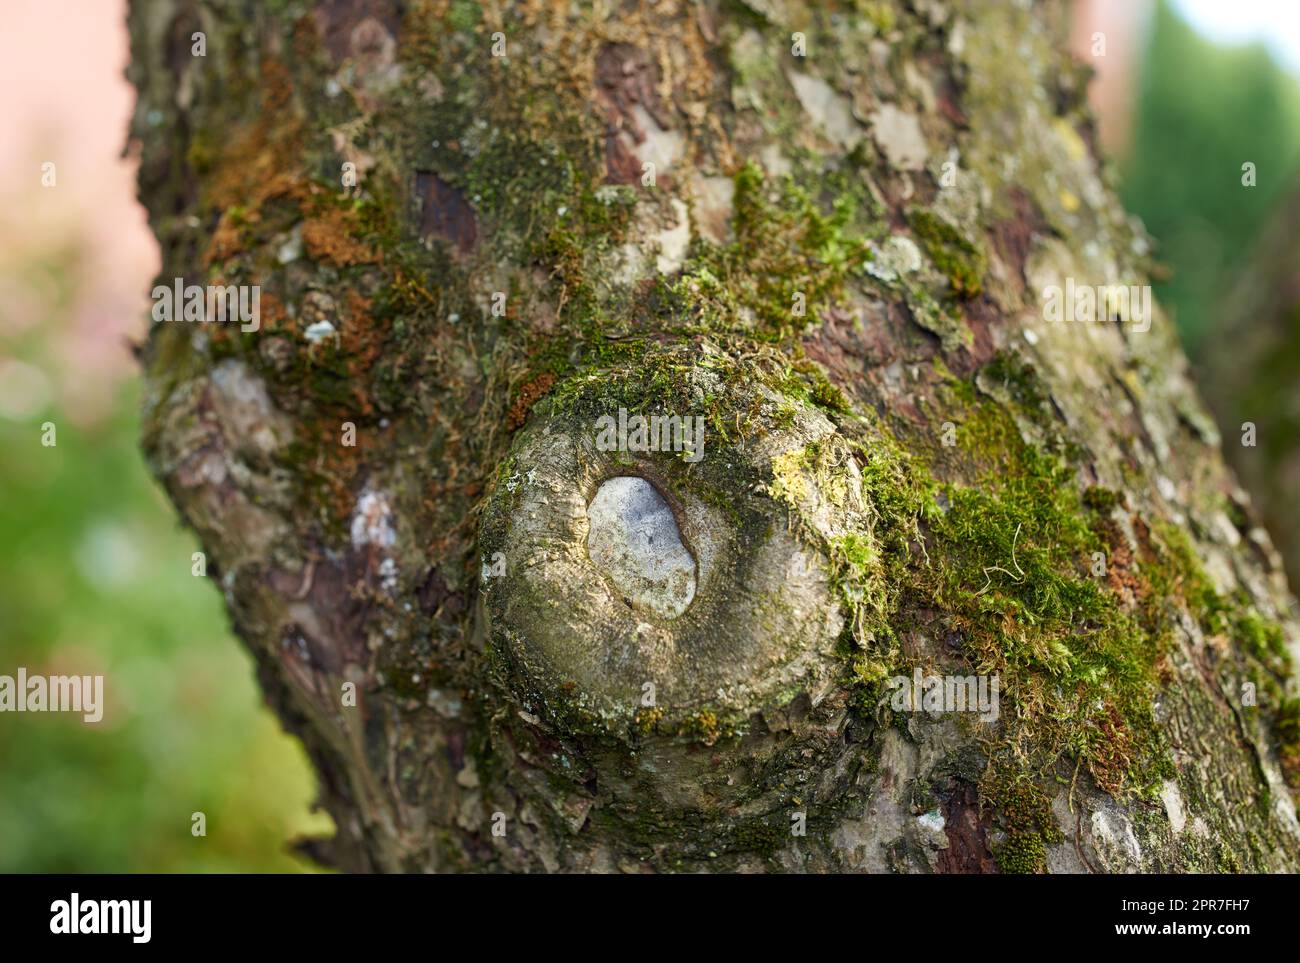 Baum mit grünem Moos, der auf dem Stamm in einer abgelegenen Umgebung in der Natur wächst. Makroansicht von Details, strukturierte Algen, die sich ausbreiten und einen Holzstamm in einer abgelegenen Naturlandschaft bedecken Stockfoto